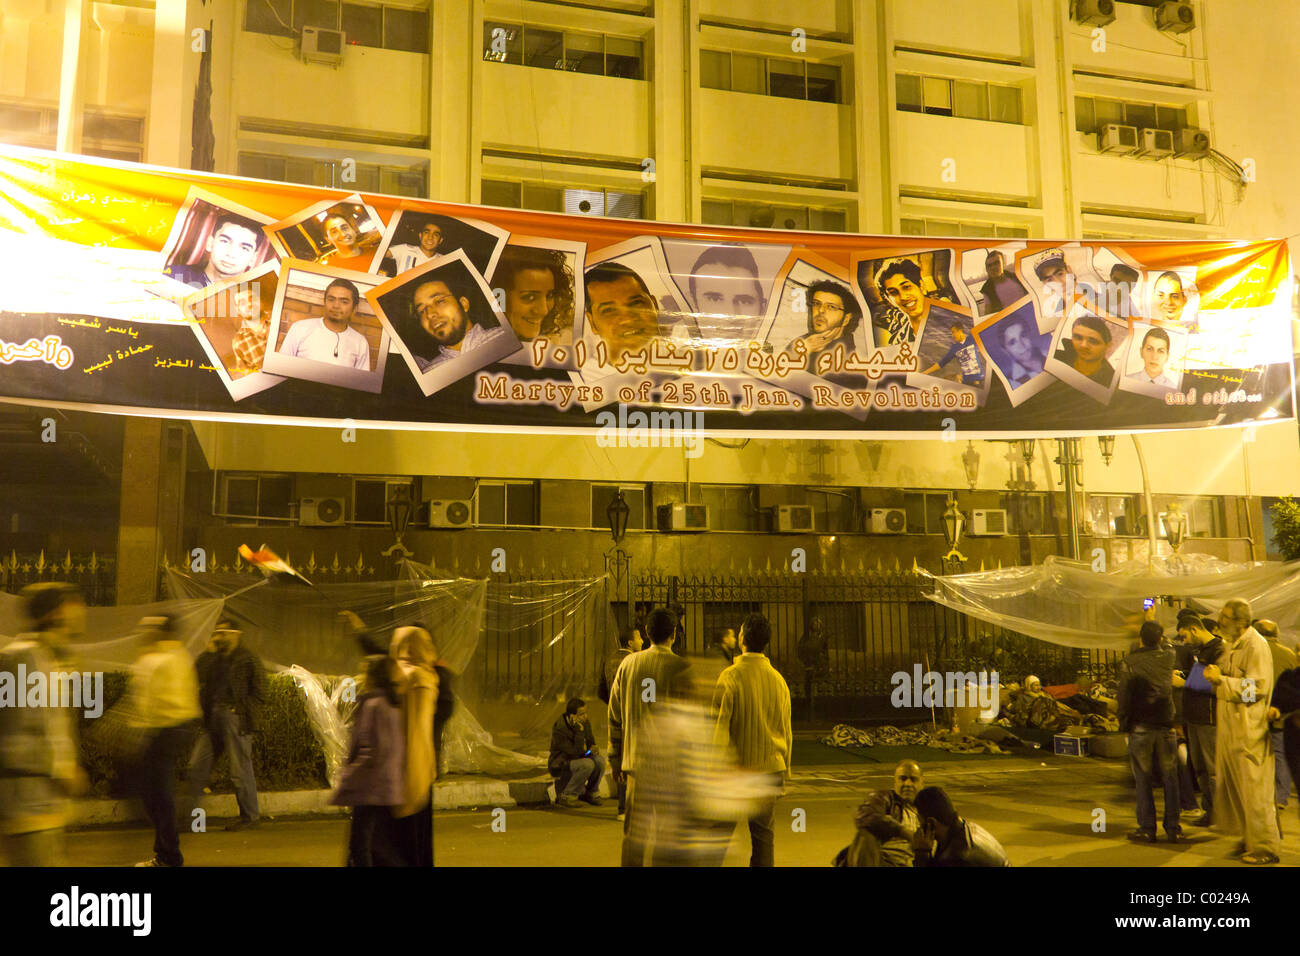 Schild mit Märtyrer von den 25 Januar-Revolution, in der Nähe der Menschen Assembly Building, nahe dem Tahrir Platz, Kairo, Ägypten Stockfoto